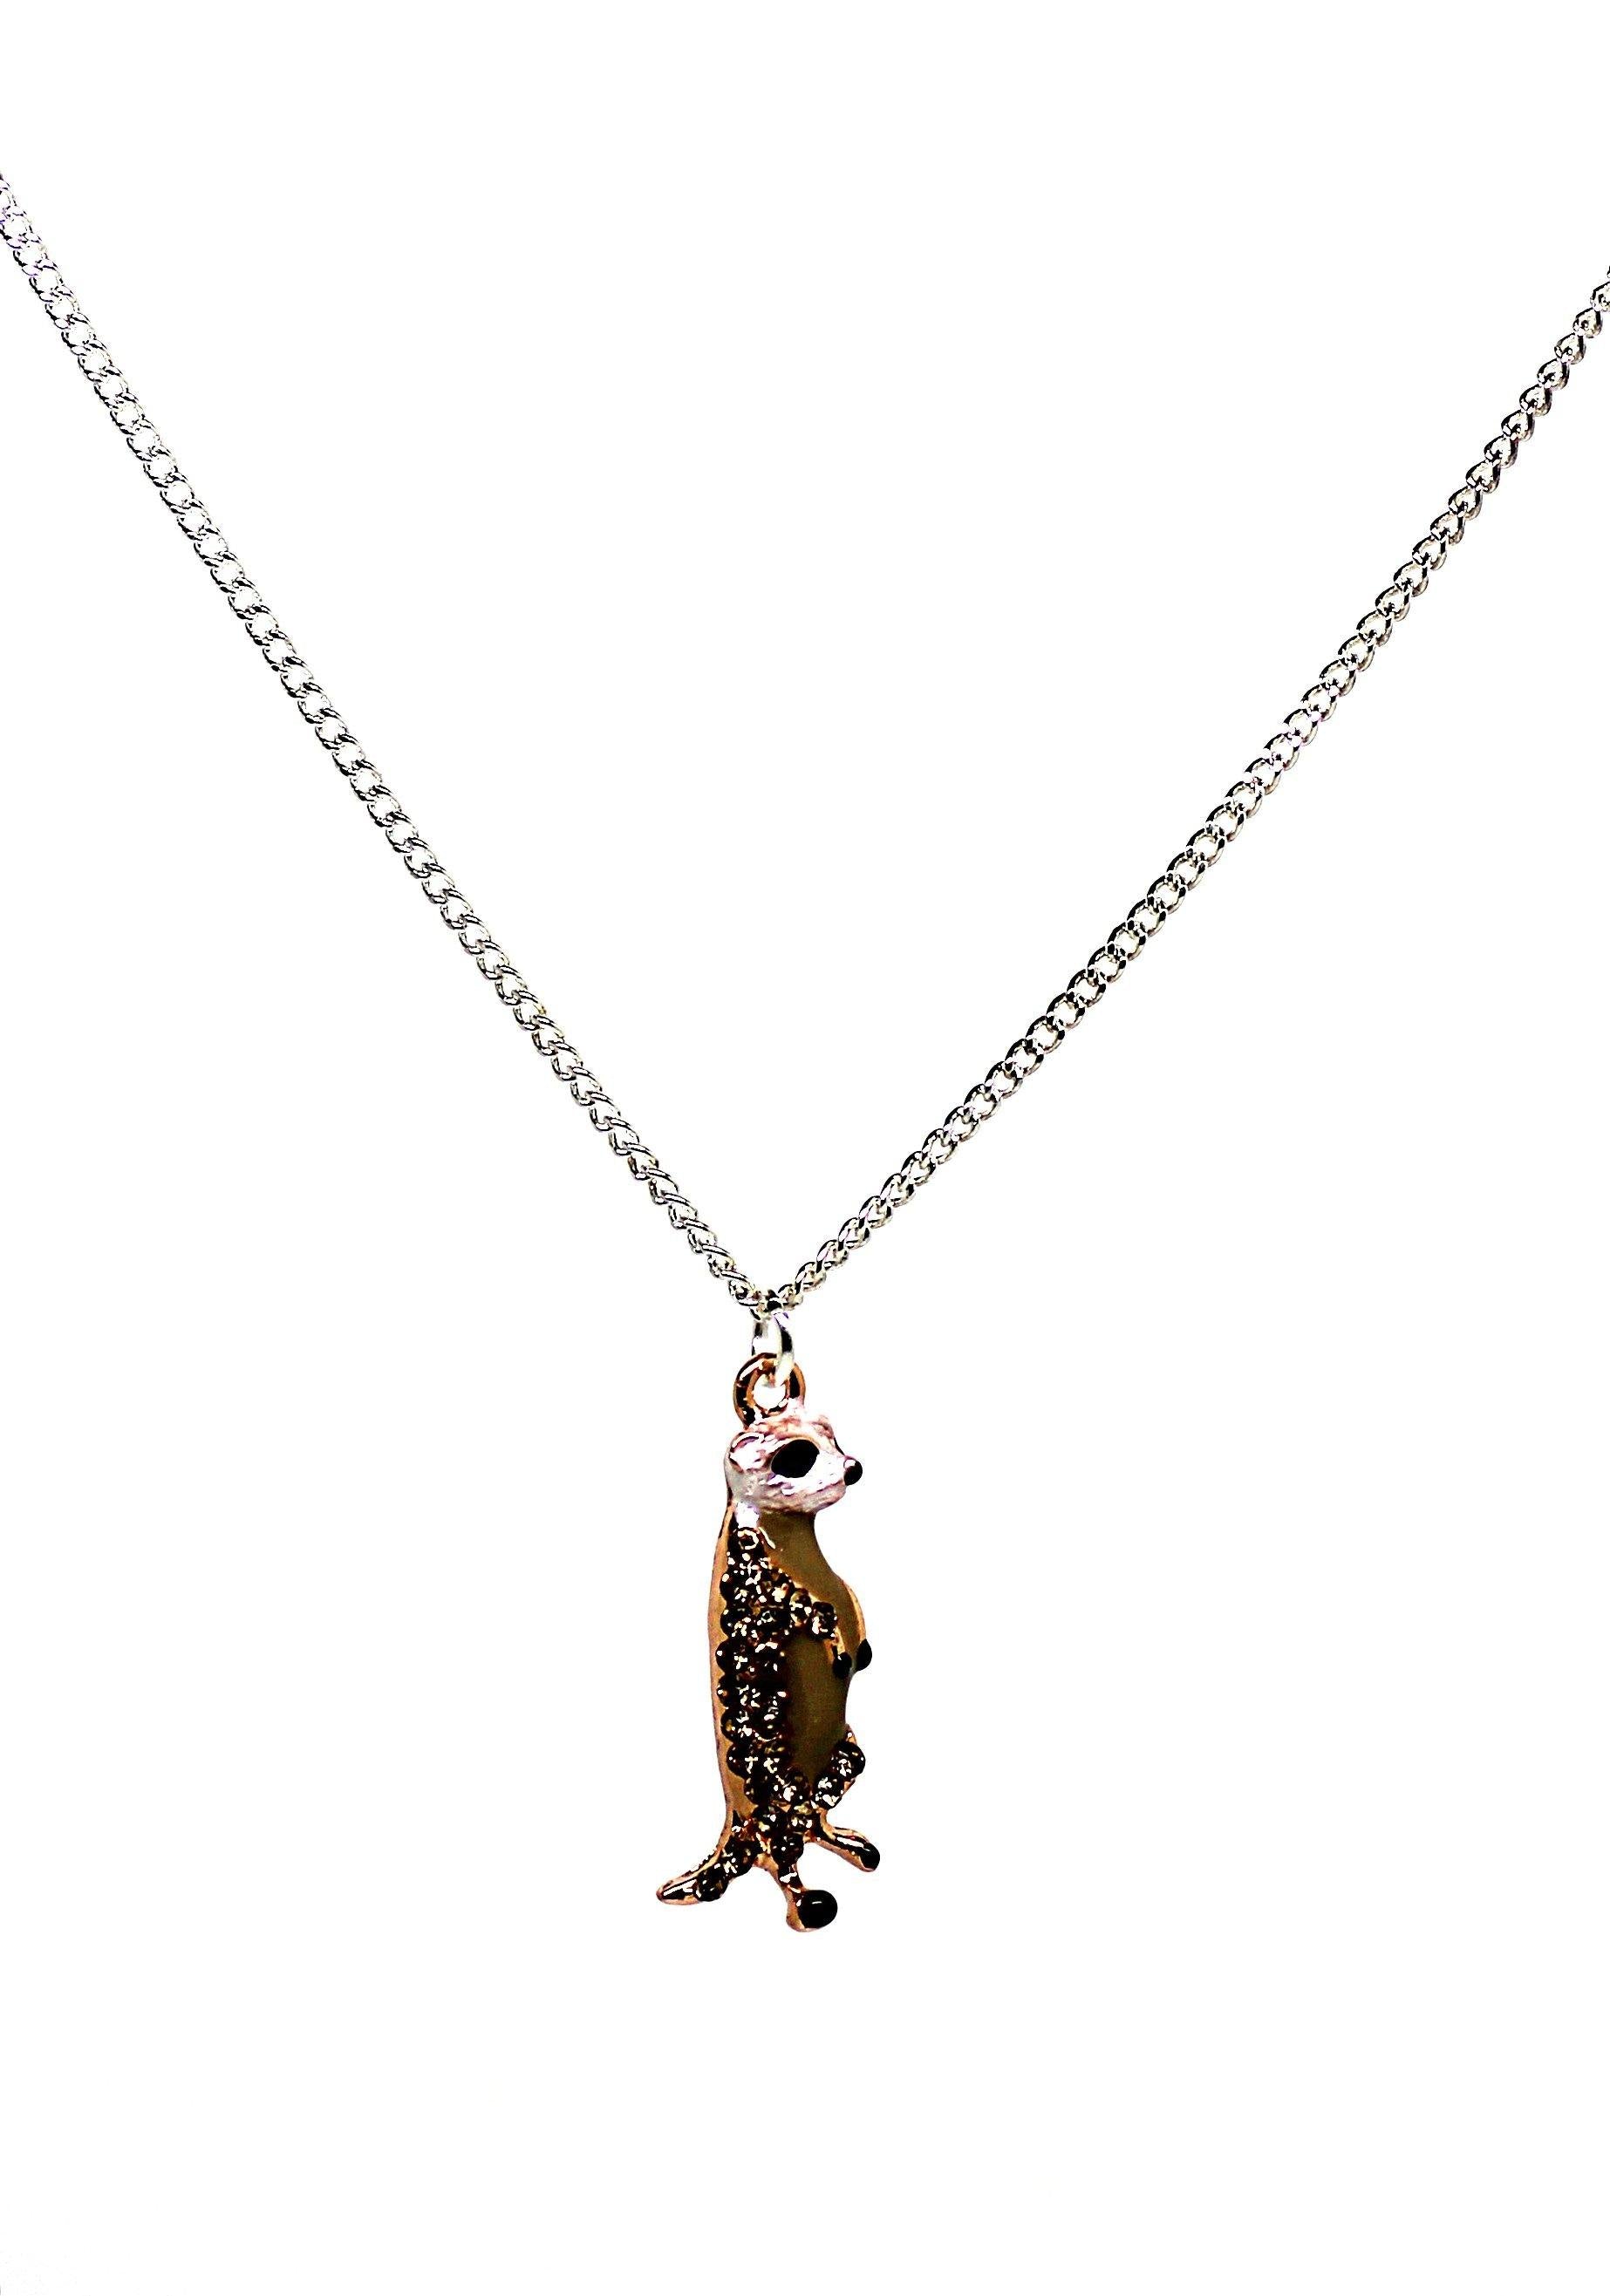 Meerkat Necklace - Wildtouch - Wildtouch